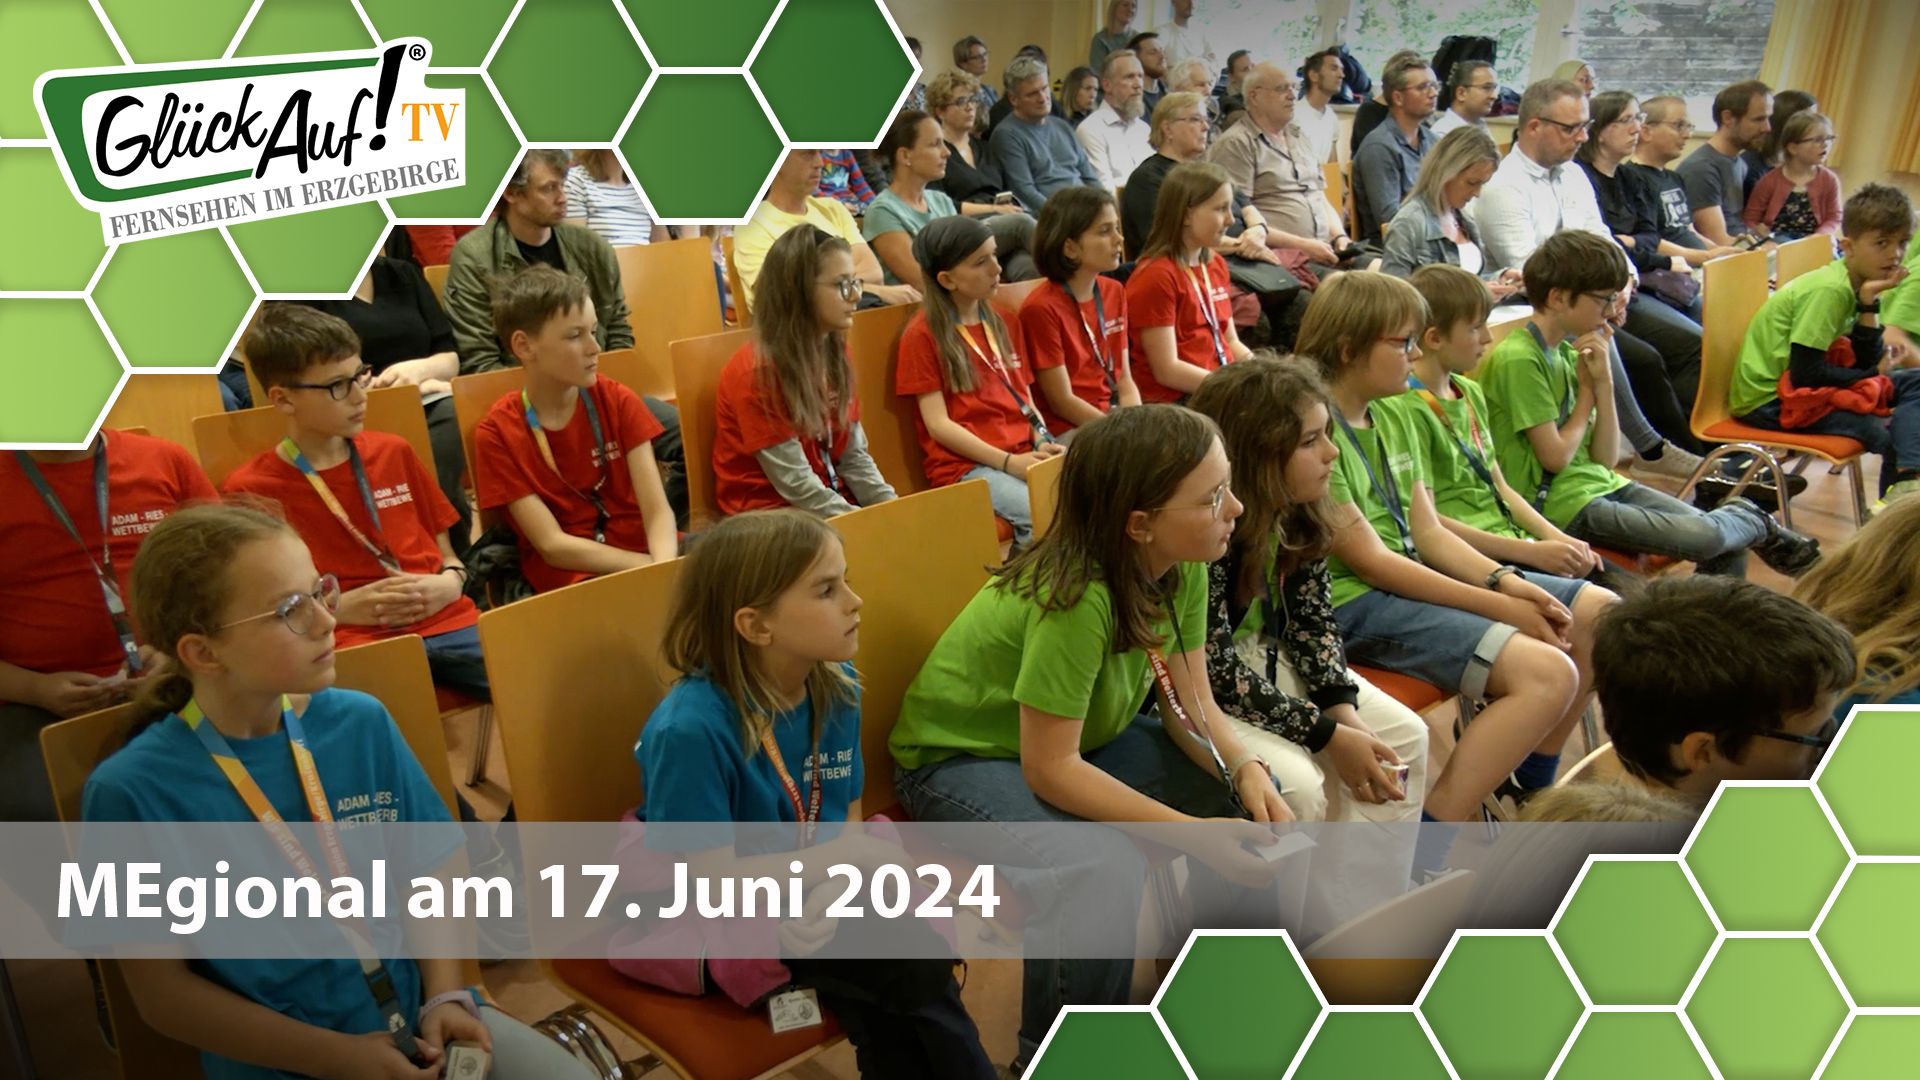 MEgional am 17. Juni 2024 mit dem Adam-Ries-Wettbewerb in Annaberg-Buchholz